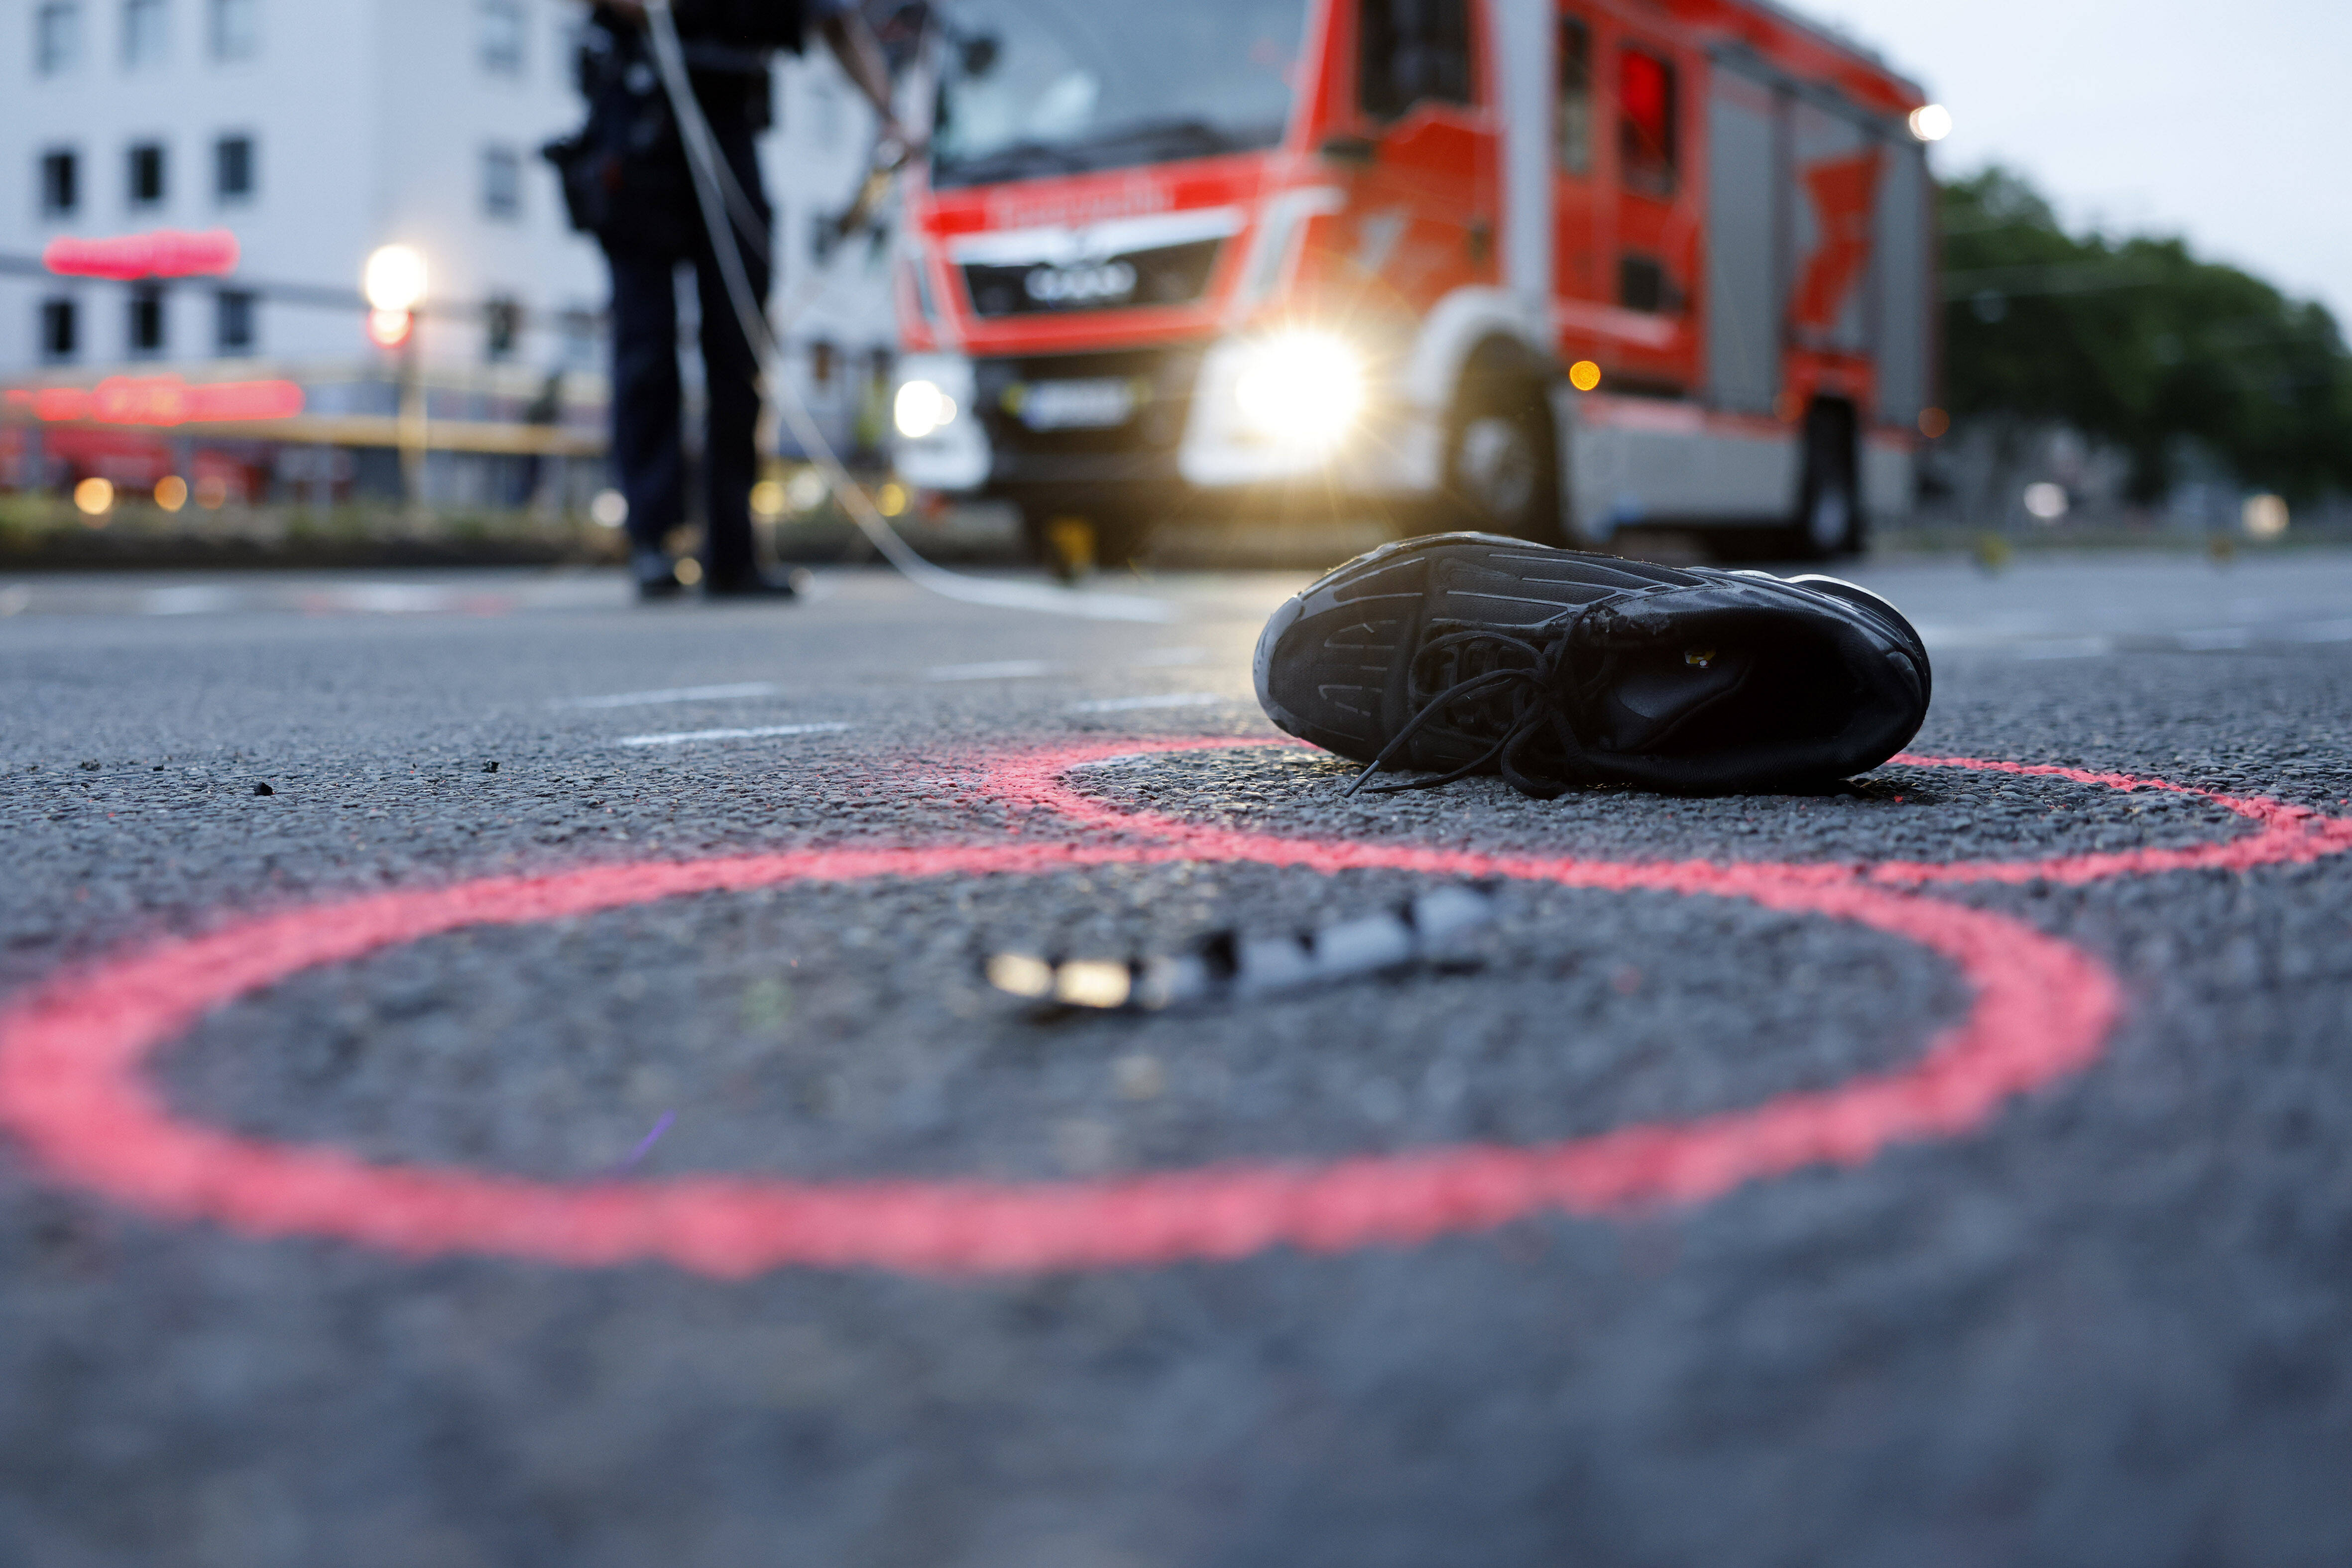 Autofahrer rast mit 3,8 Promille in Biker-Gruppe - Motorradfahrer schwer verletzt